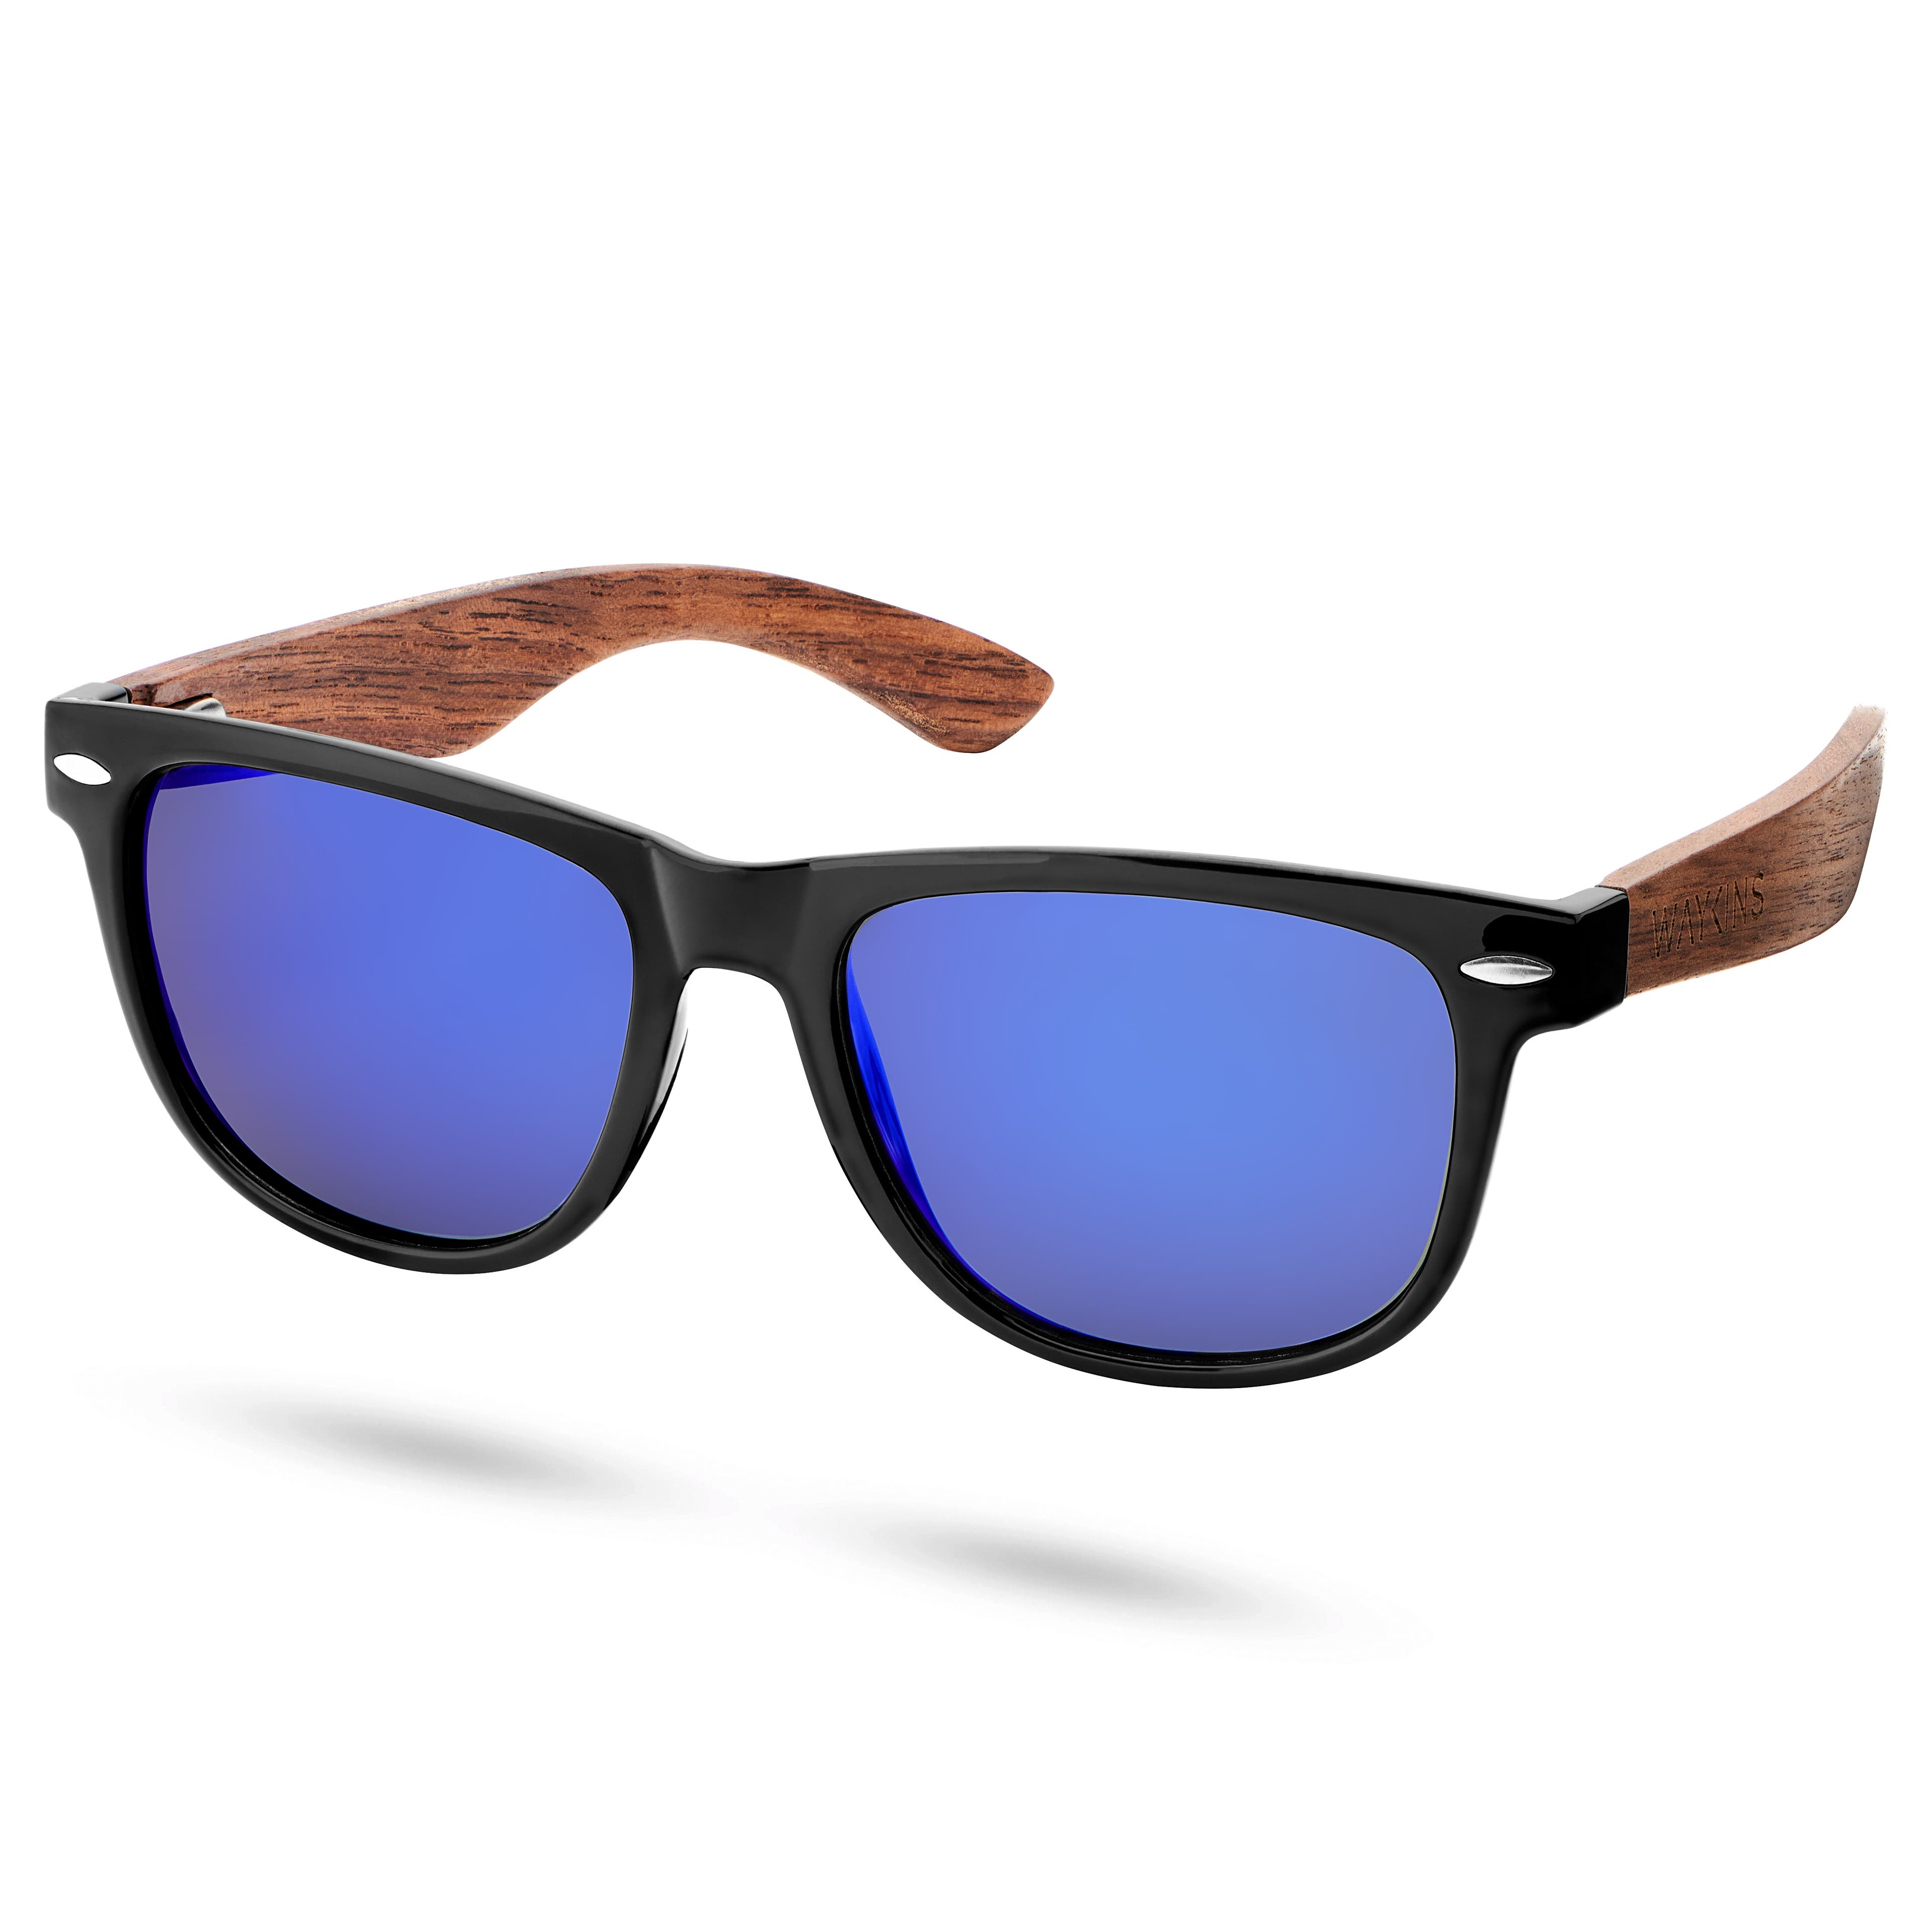 Čierne a modré retro polarizačné slnečné okuliare s drevenými nožičkami